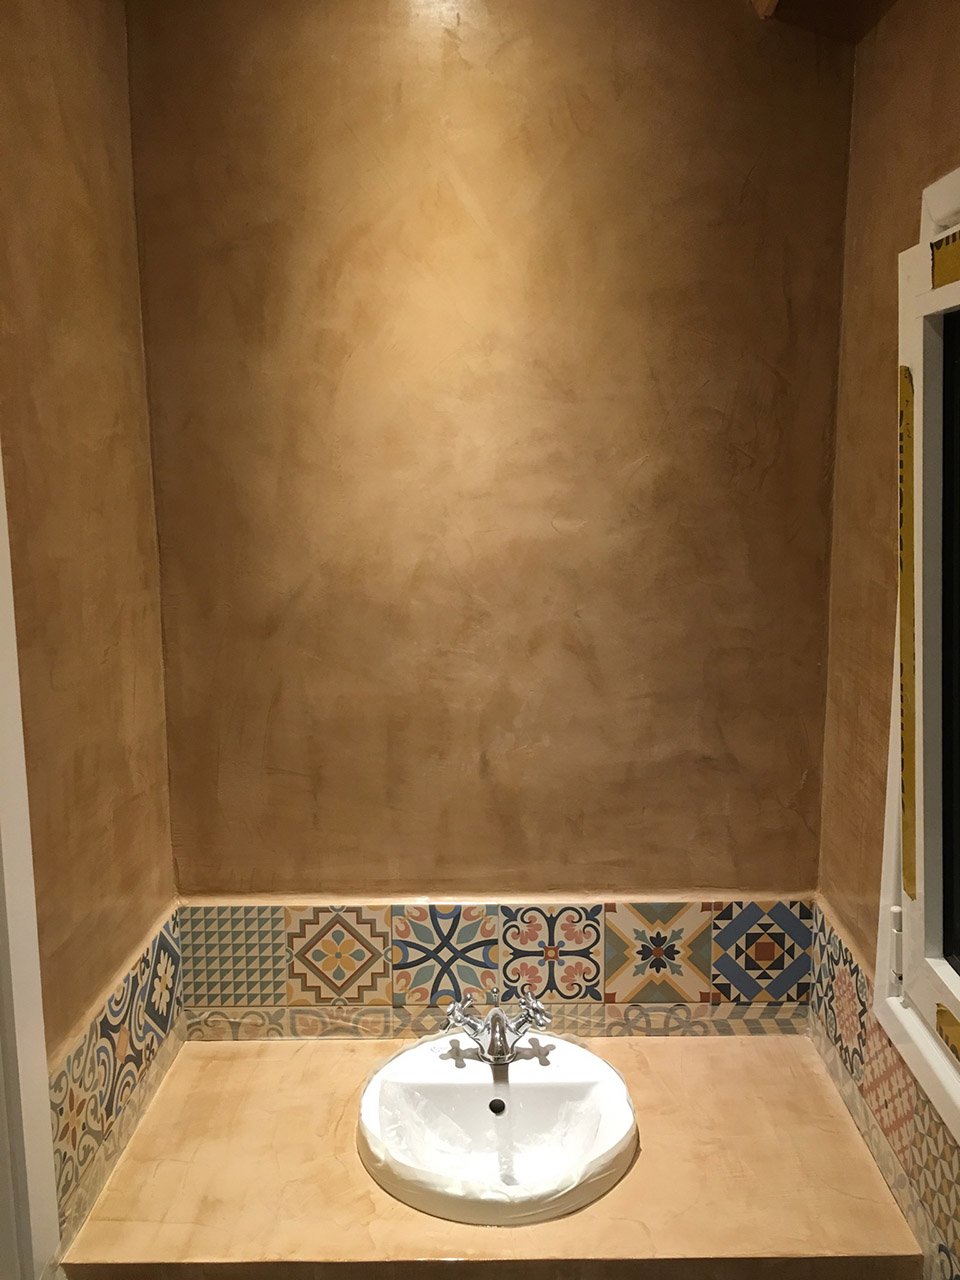 Ανακαίνιση μπάνιου με εφαρμογή πατητής τσιμεντοκονίας στο Χαλάνδρι πριν και μετά